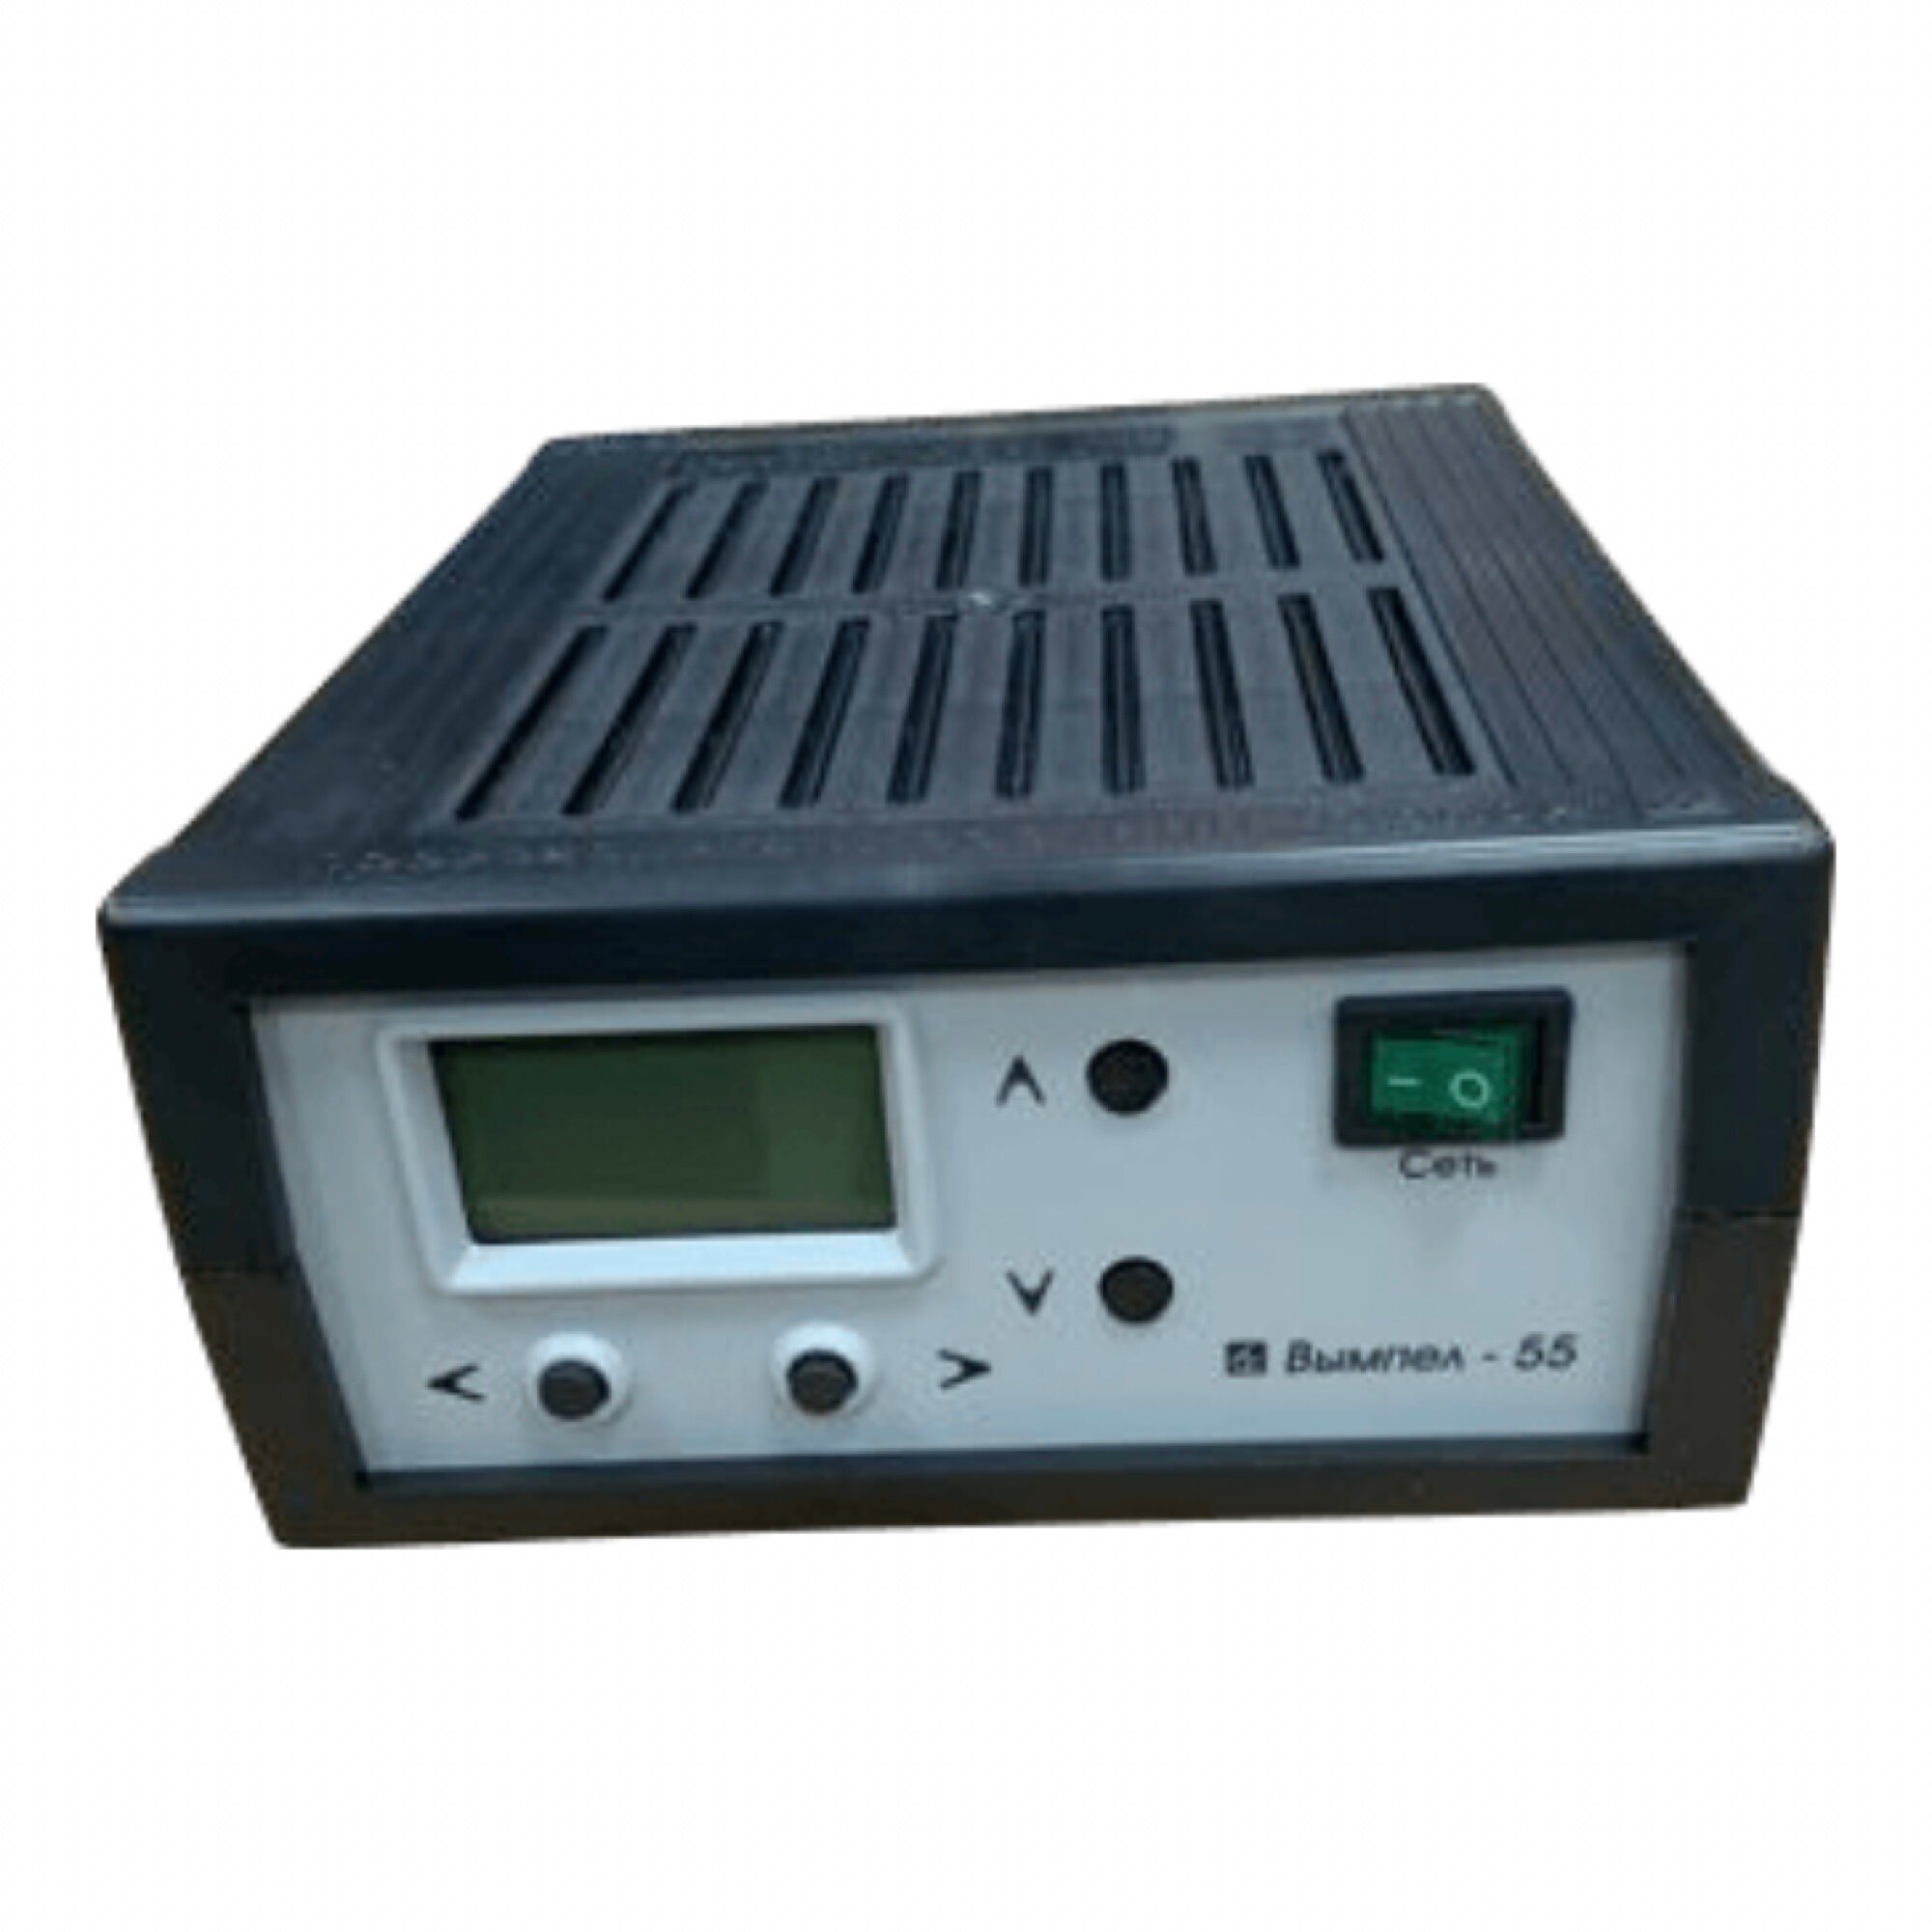 Зарядное устройство вымпел- 55 ( 0,5-15 А , 0,5/18В автомат, ЖК индикатор) 2012